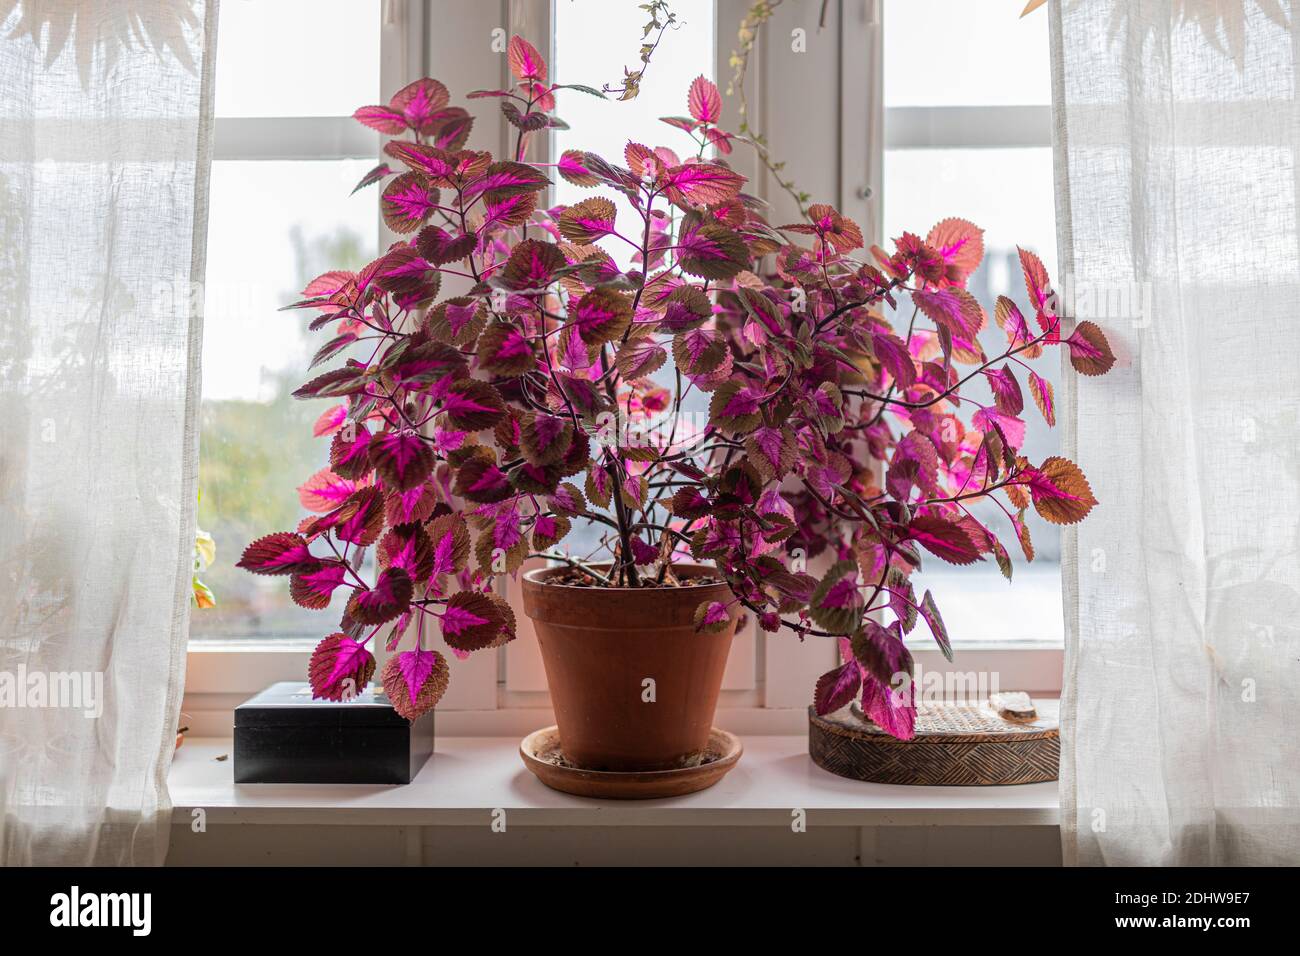 Eine große Coleus Pflanze drinnen in einer Fensterbank. Es hat violette Blätter und ist von weißen Vorhängen eingerahmt. Plectranthus scutellarioides. Stockfoto